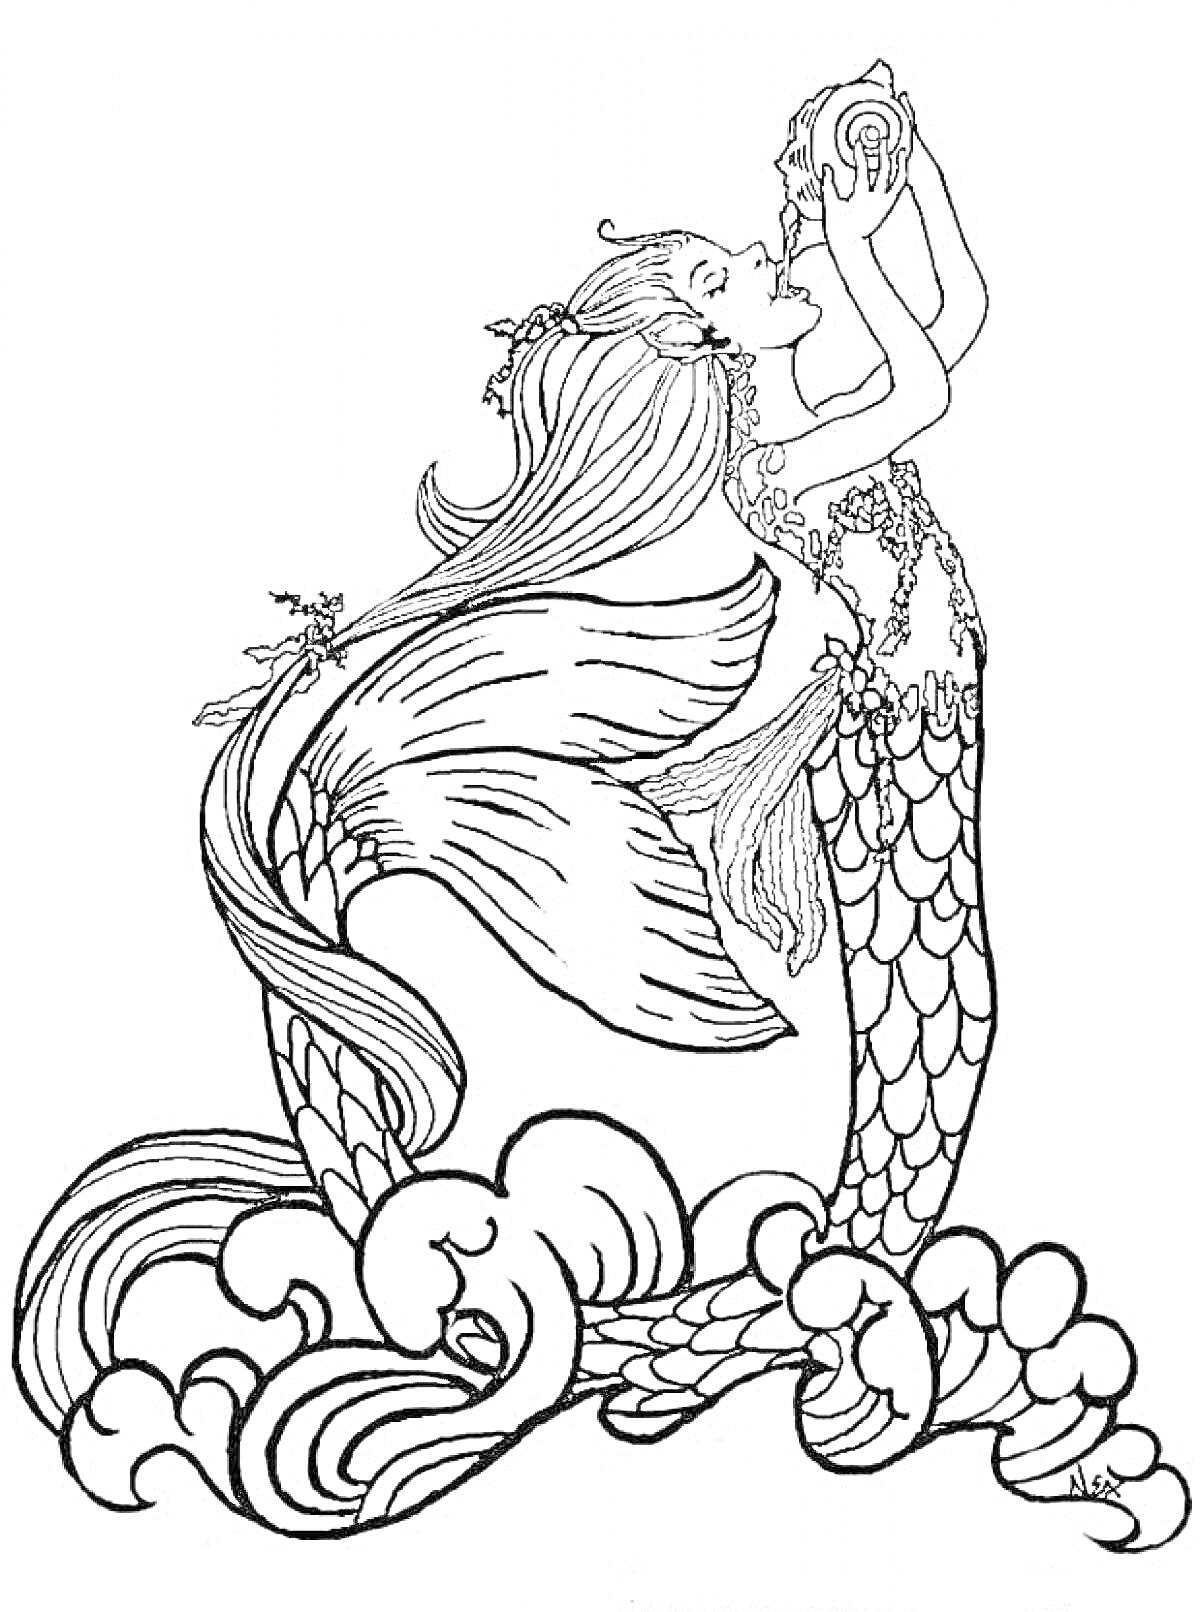 Русалка с длинными волосами, раковиной в руках и хвостом, стоящая на волнах